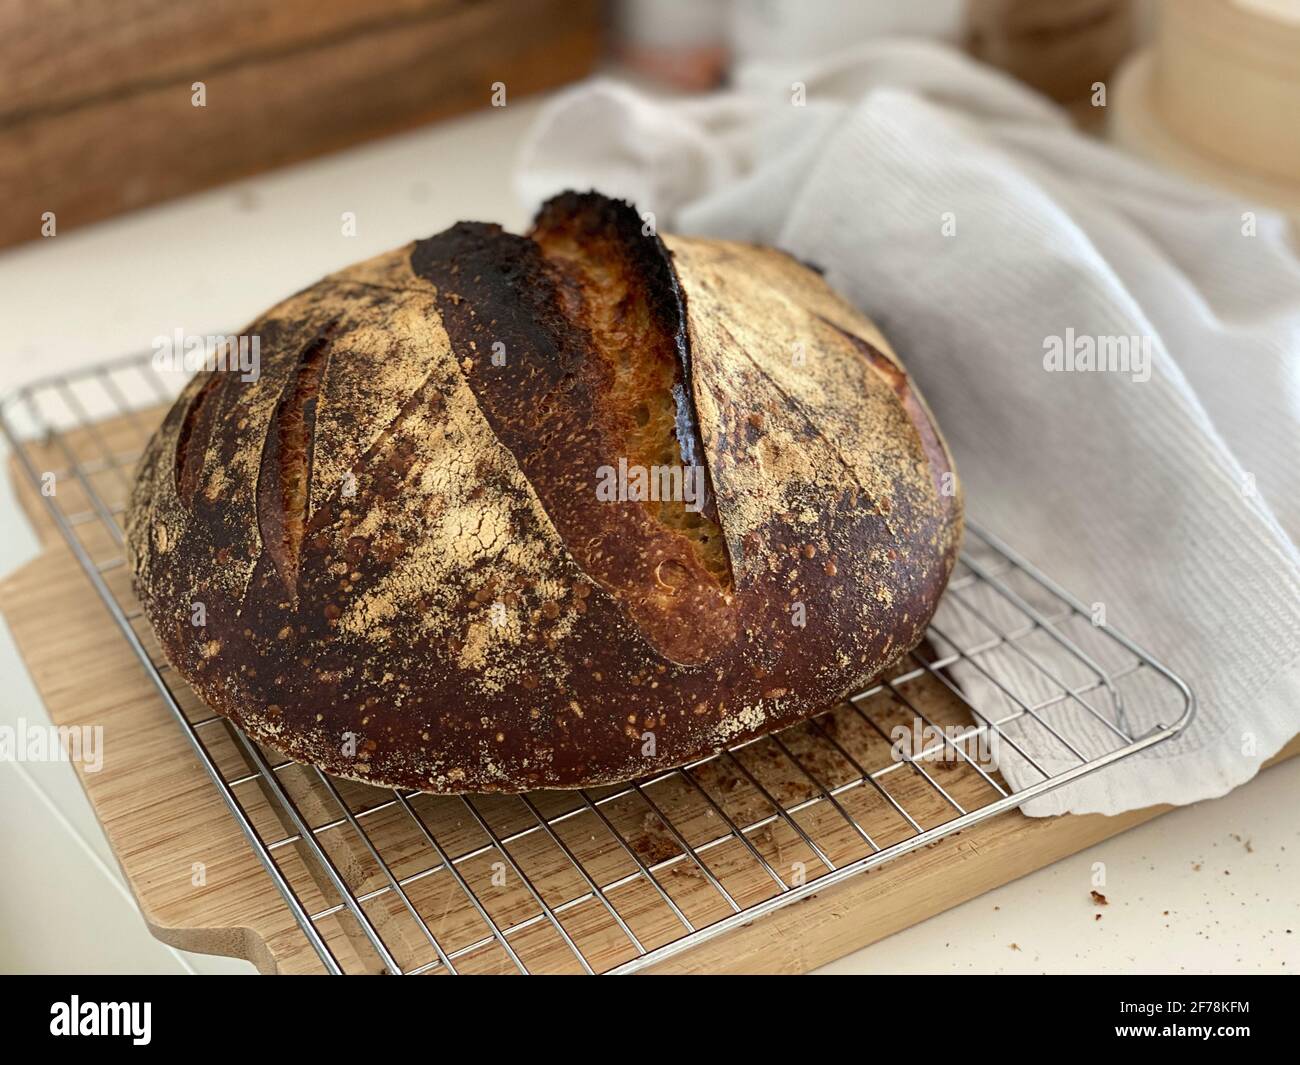 Un pain de pain artisanal de levain de blé, fraîchement cuit sur une pierre à pâtisserie avec sa croûte toujours crépitante Banque D'Images